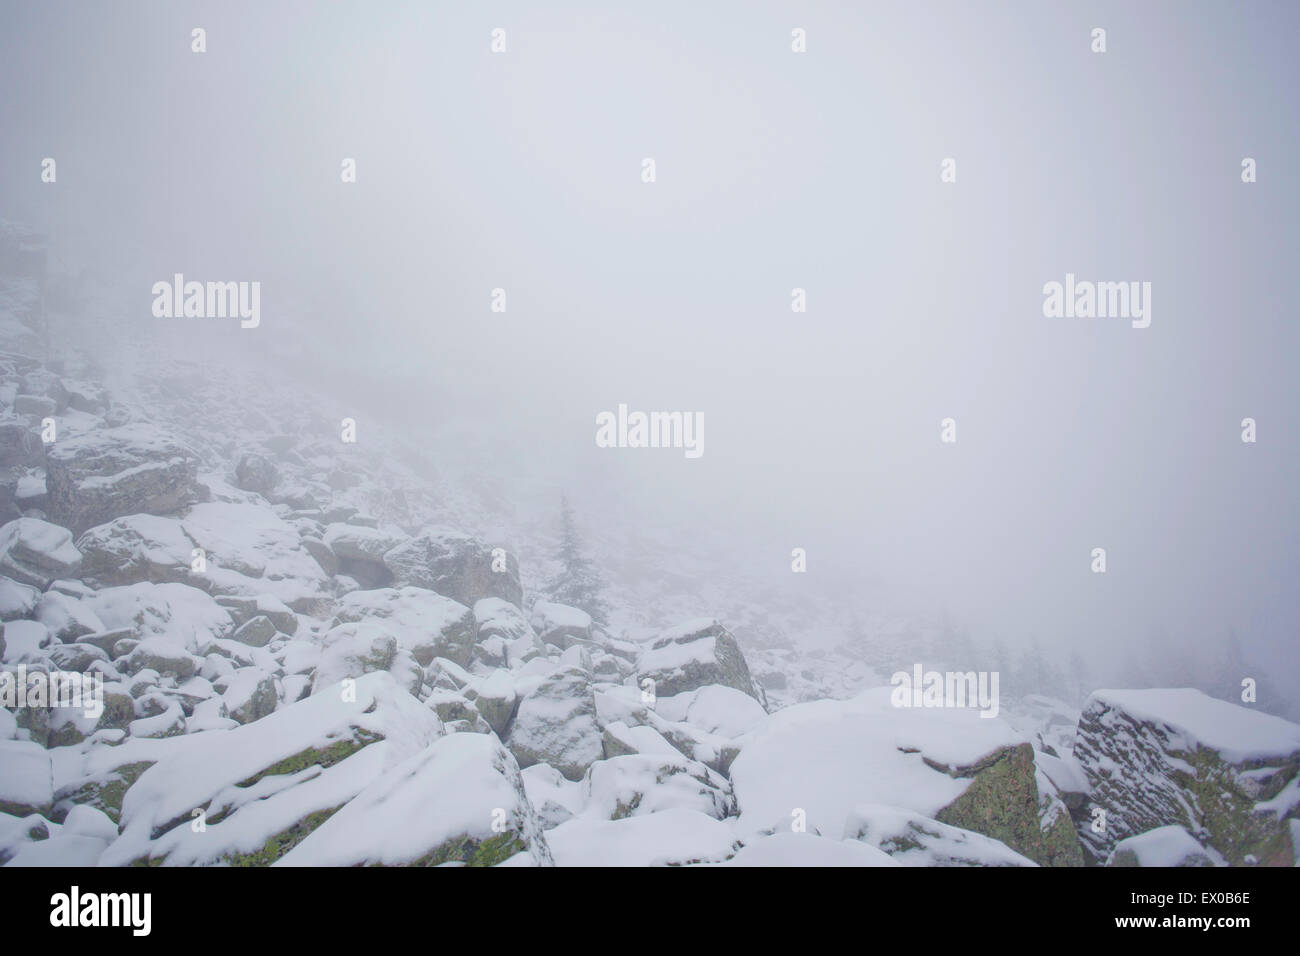 Des roches couvertes de neige dans la brume, Sarsy Village, oblast de Sverdlovsk, en Russie Banque D'Images